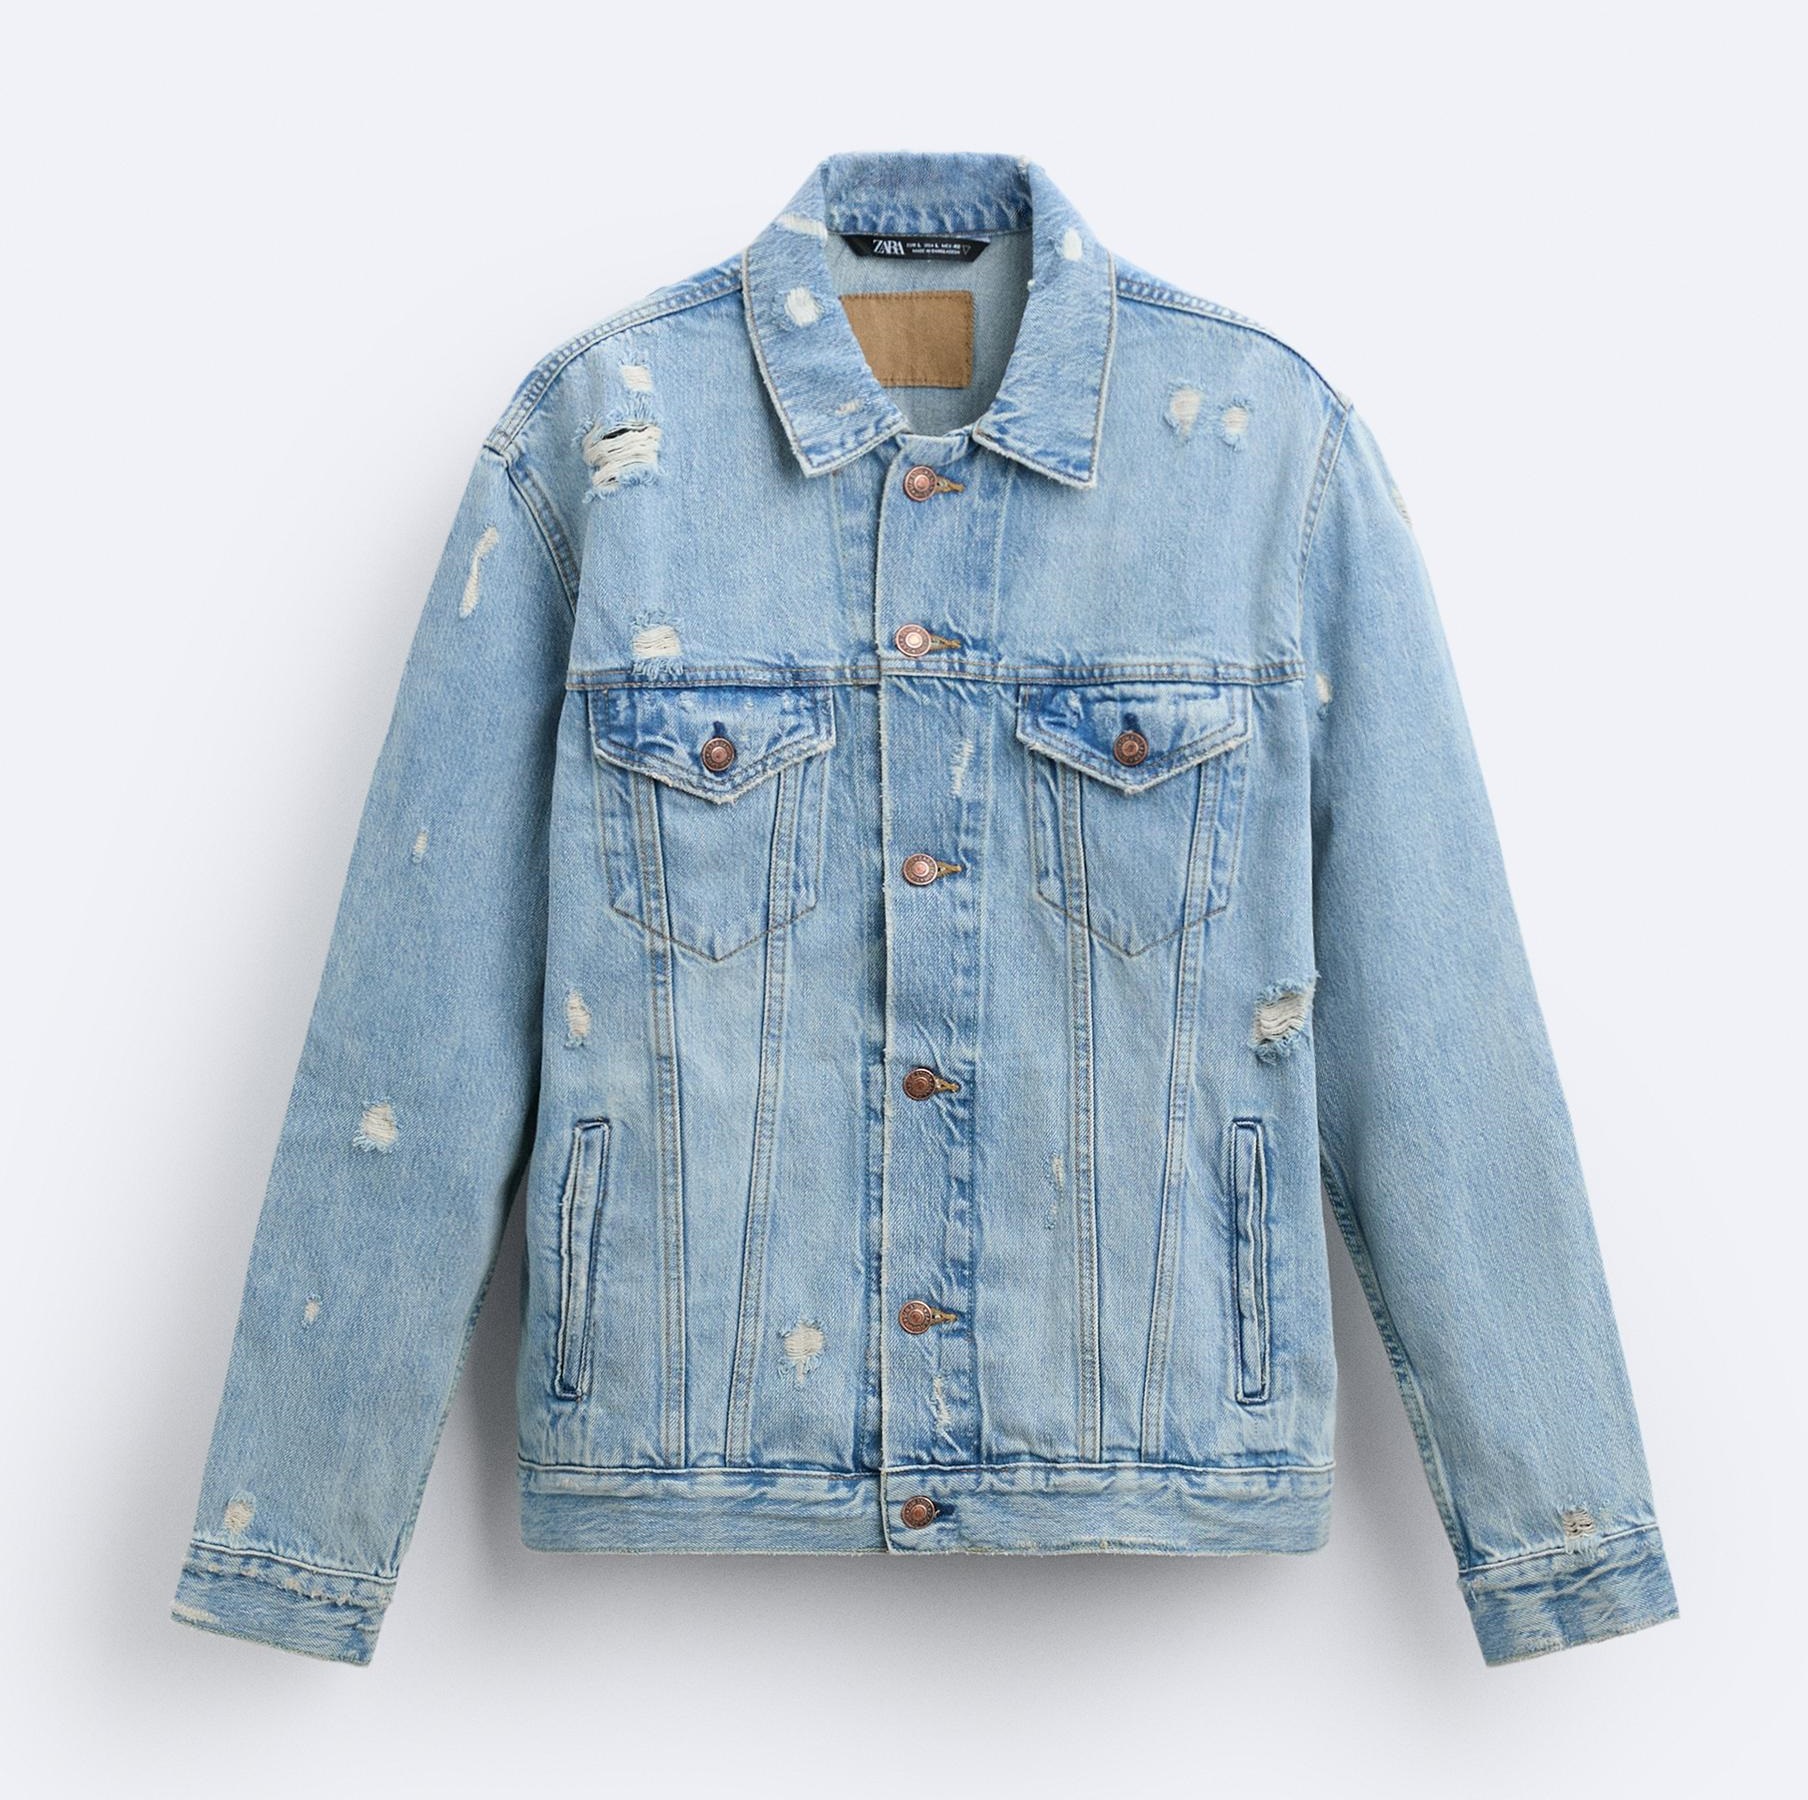 Куртка Zara Ripped Denim, синий джинсовая куртка мужская рваная ковбойская джинсовая куртка модный тренд весна осень